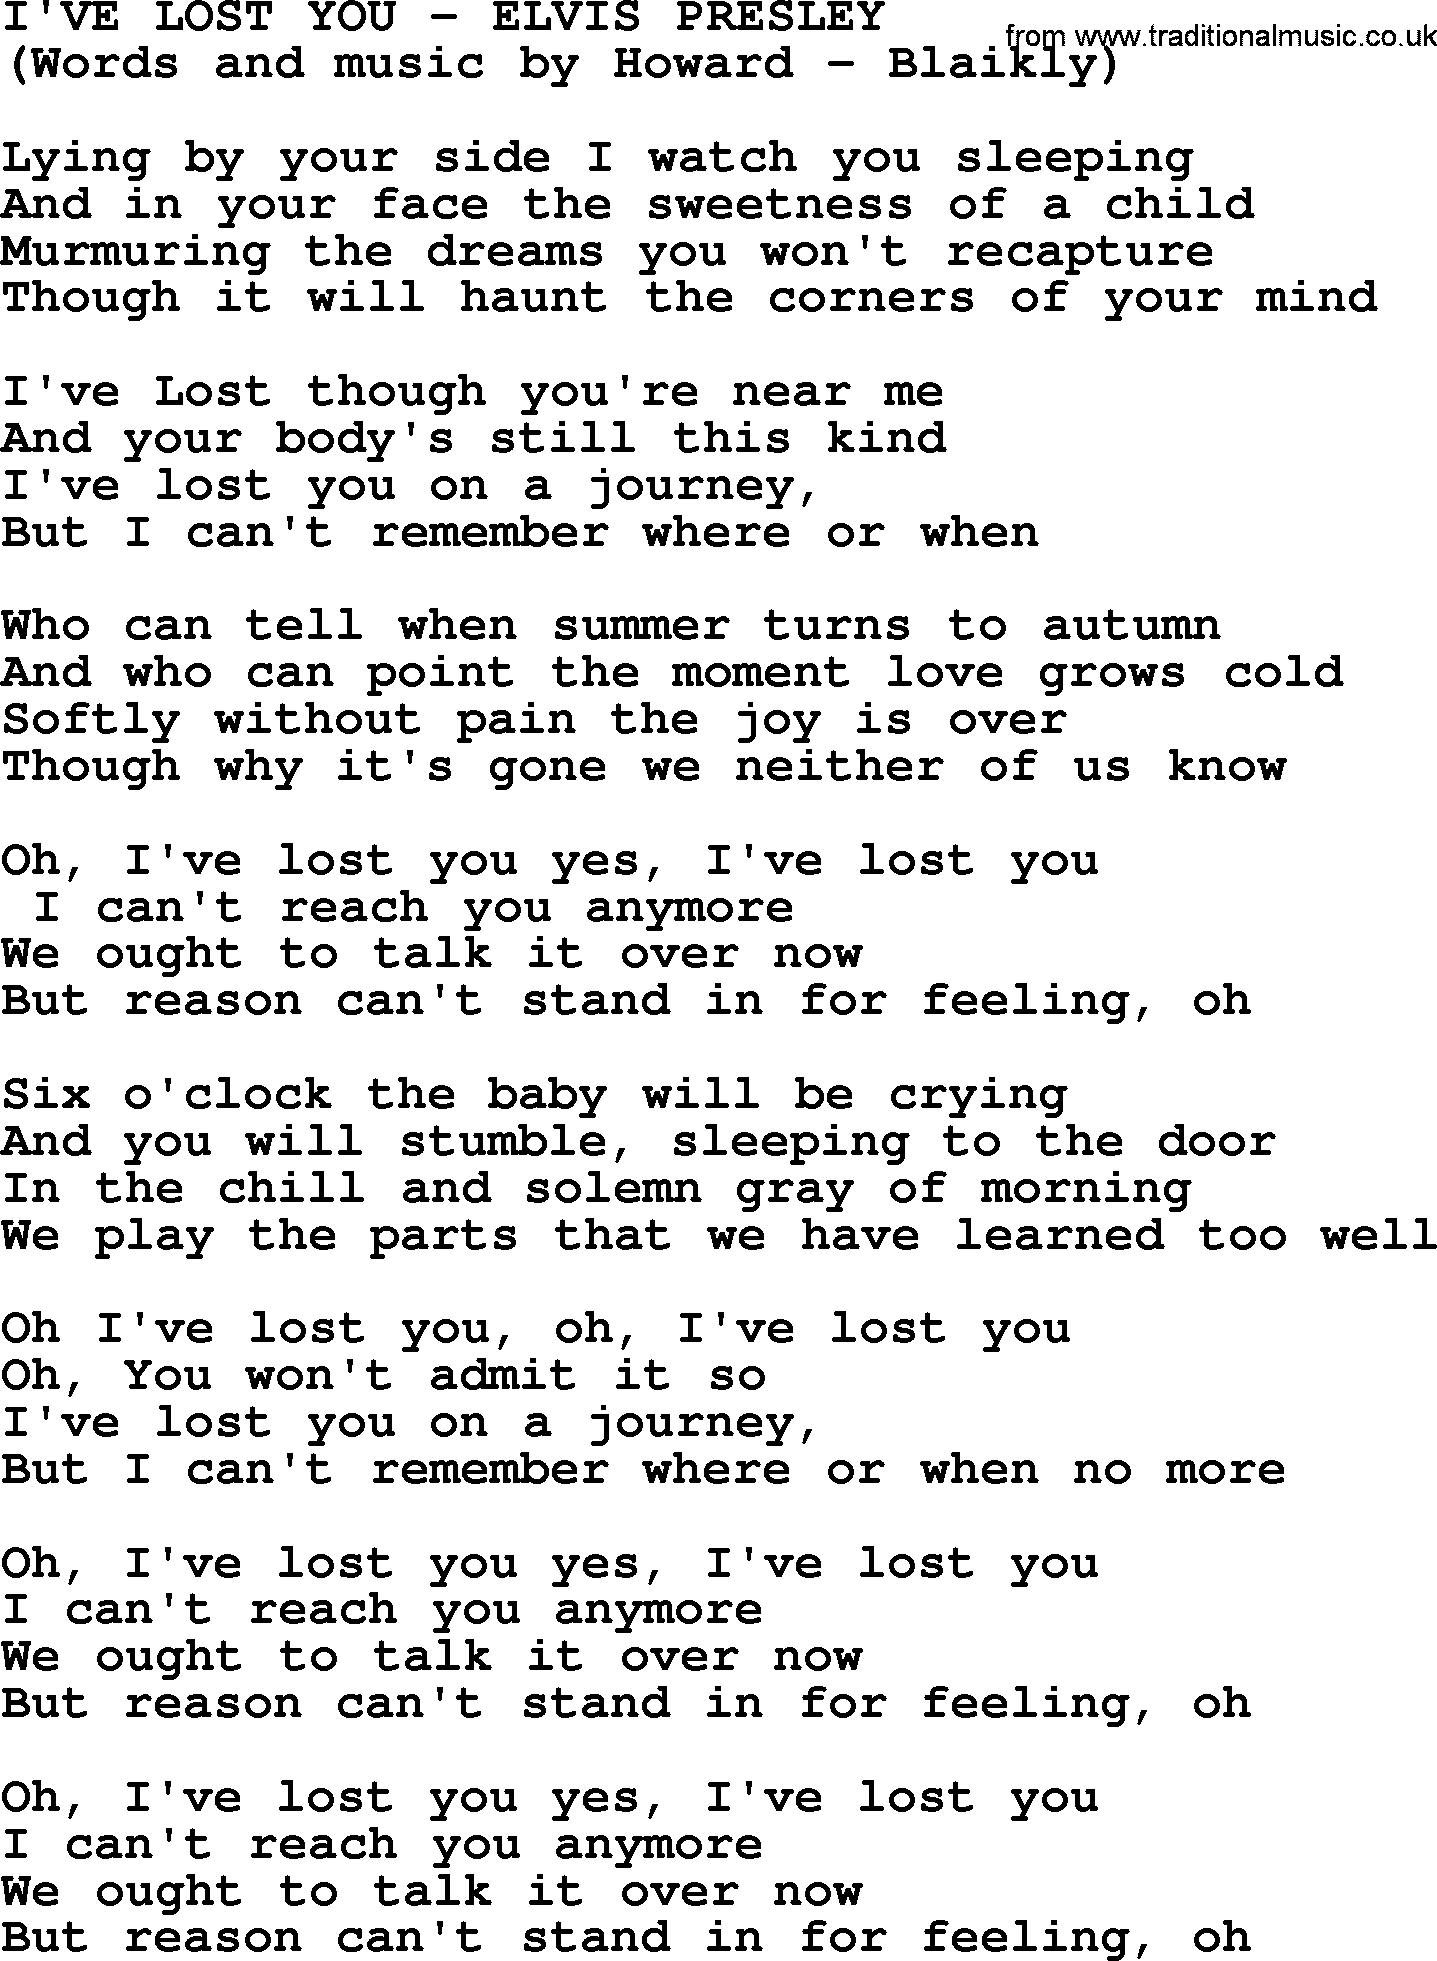 Elvis Presley song: I've Lost You lyrics